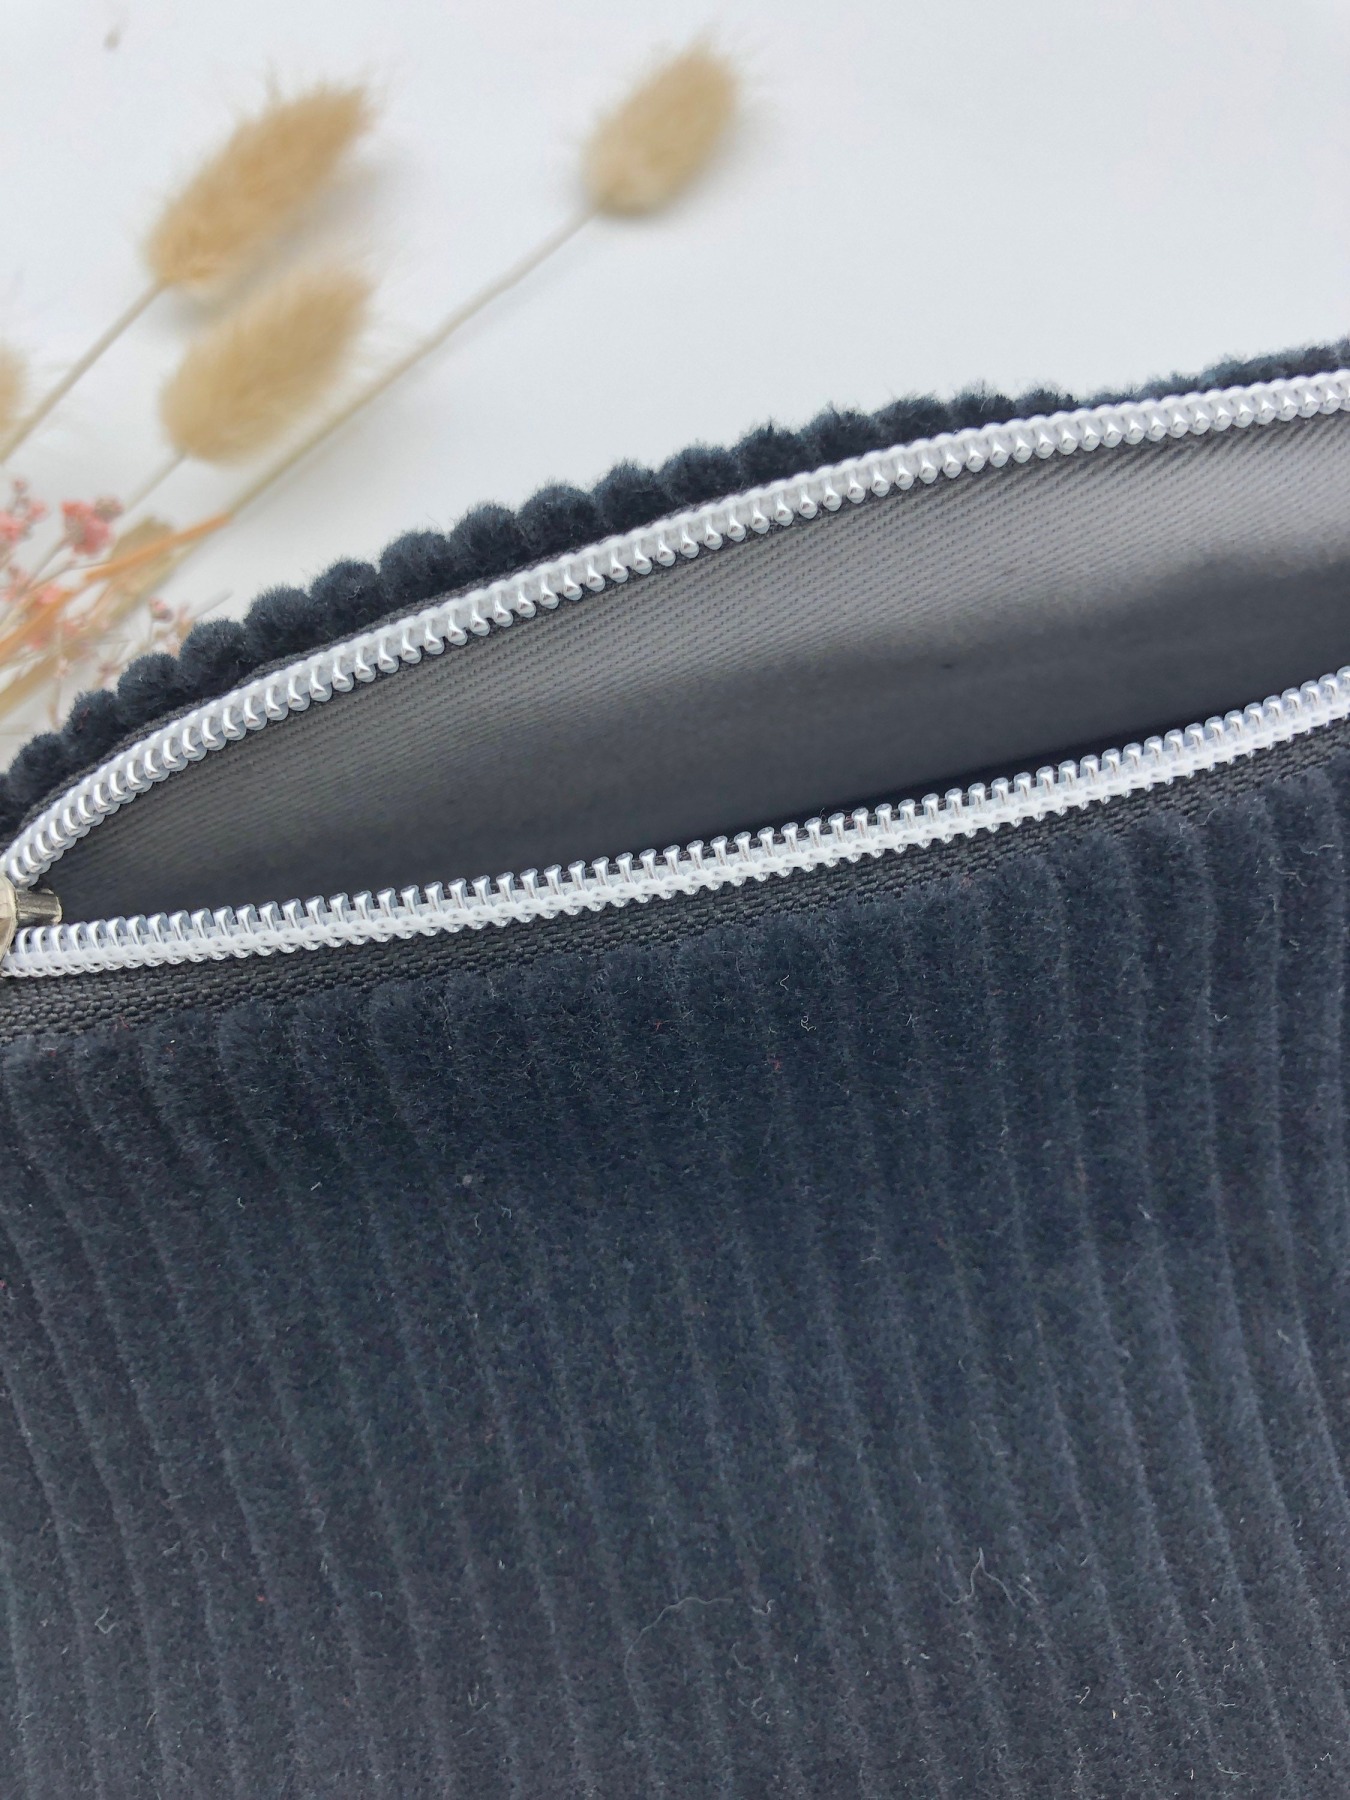 Bauchtasche XL Crossbag Cord schwarz mit Taschengurt Fischgrät Hipbag leicht und praktisch Kord